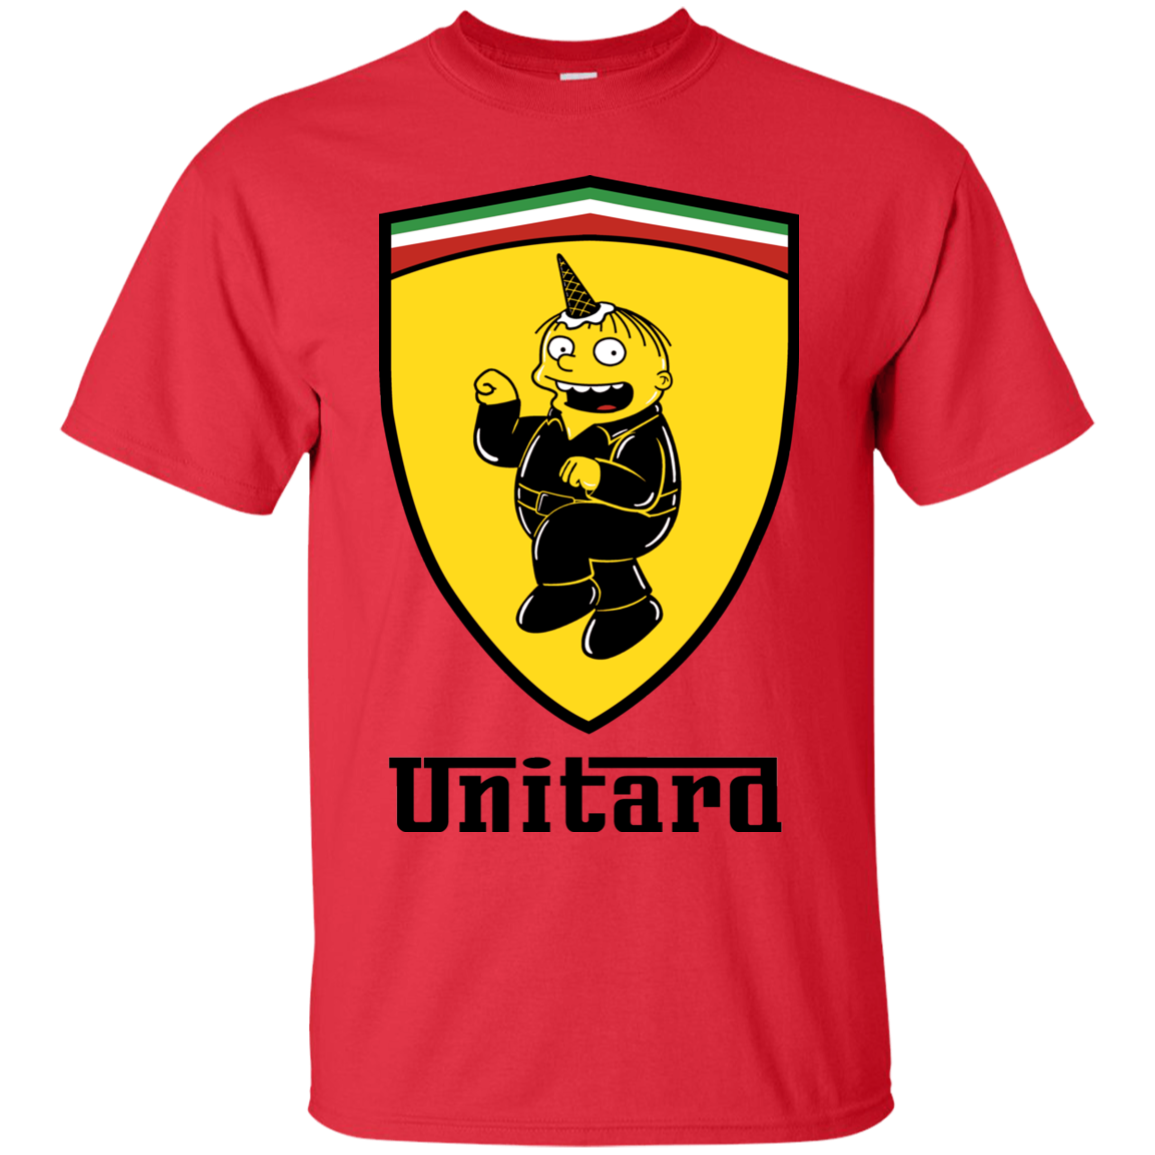 Unitardi T-Shirt